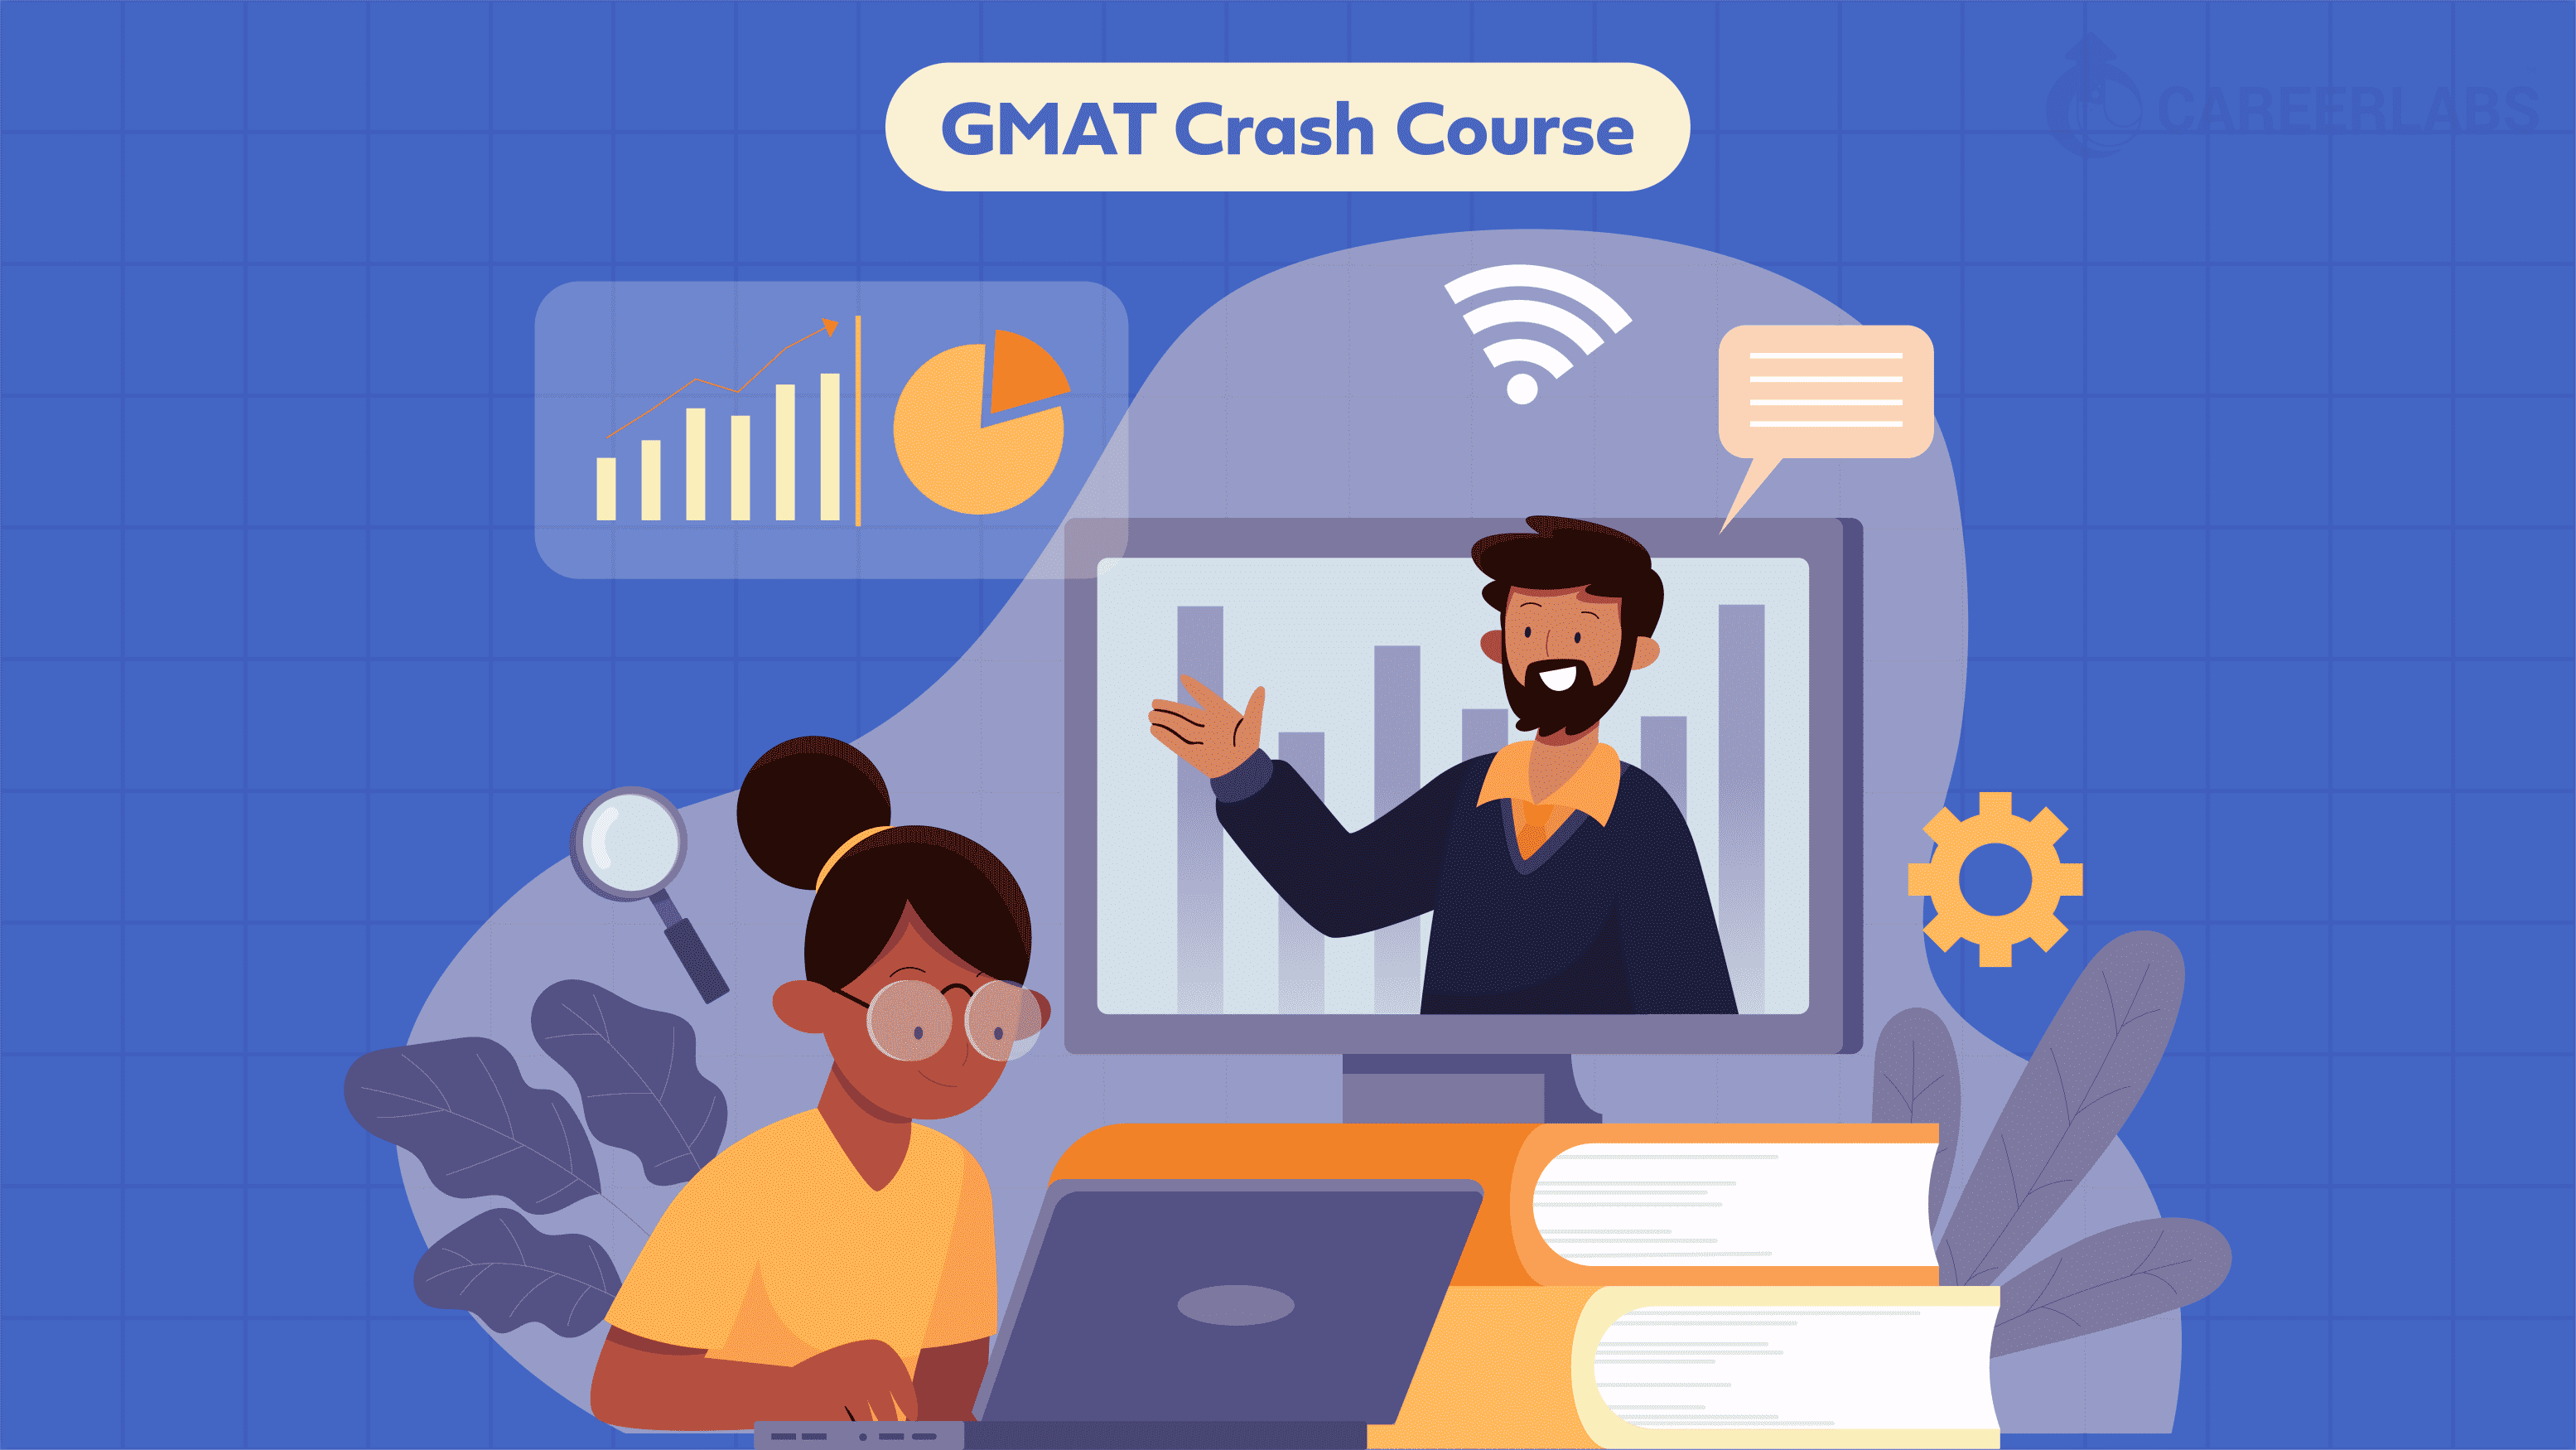 A Crash Course